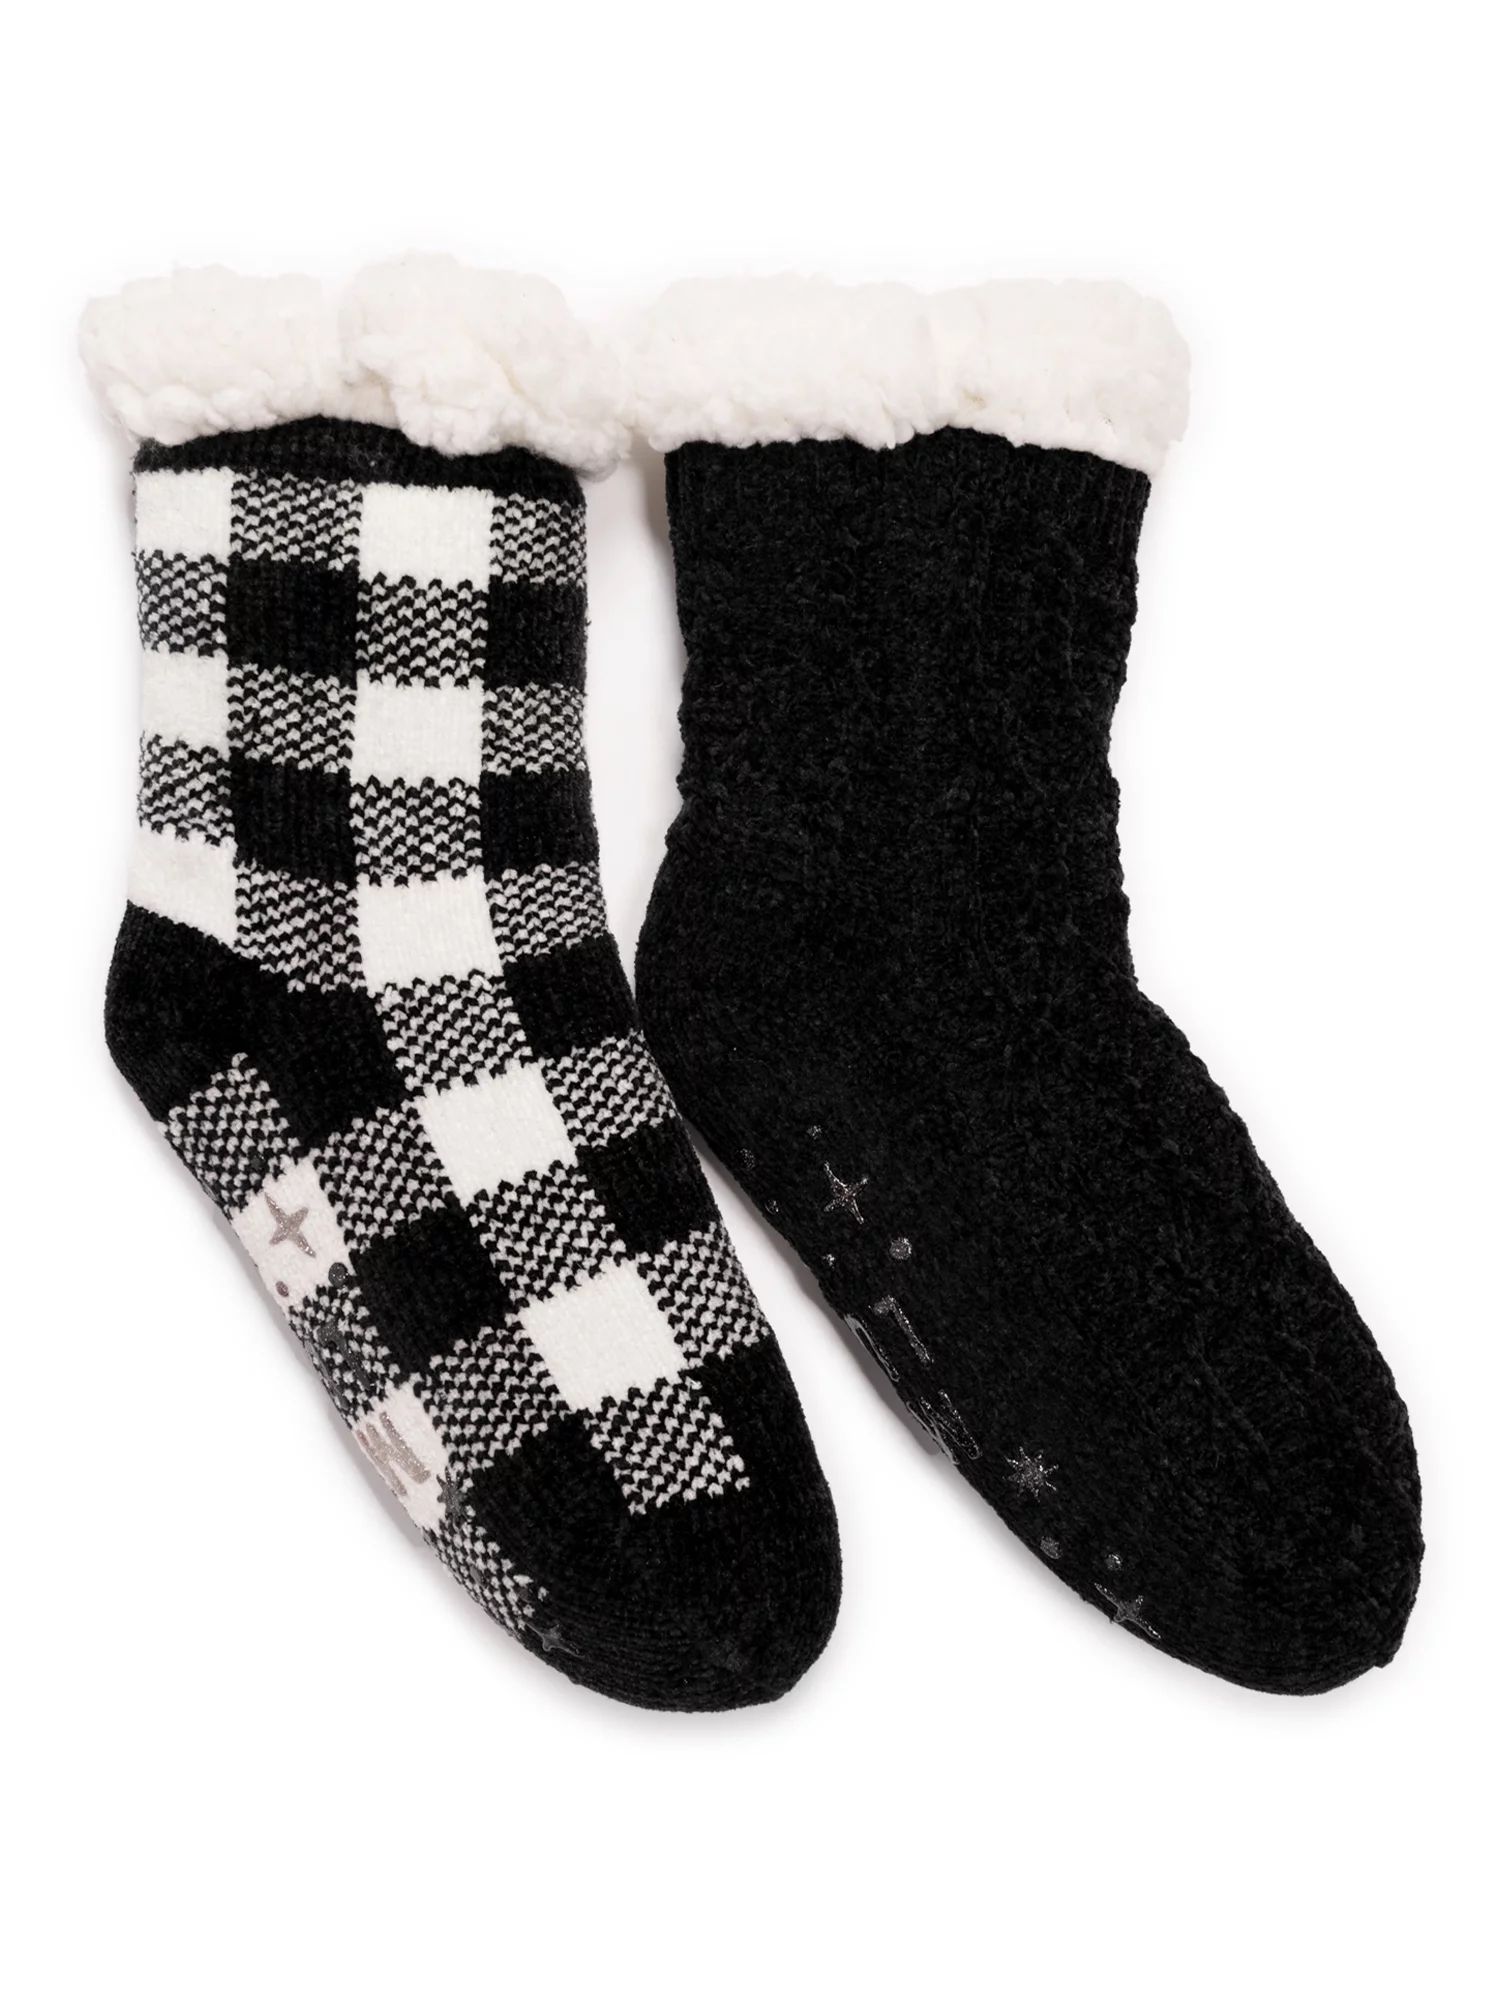 Muk Luks Women's Chenille Plush Lined Cabin Socks, 2-Pack, Sizes S-XL | Walmart (US)